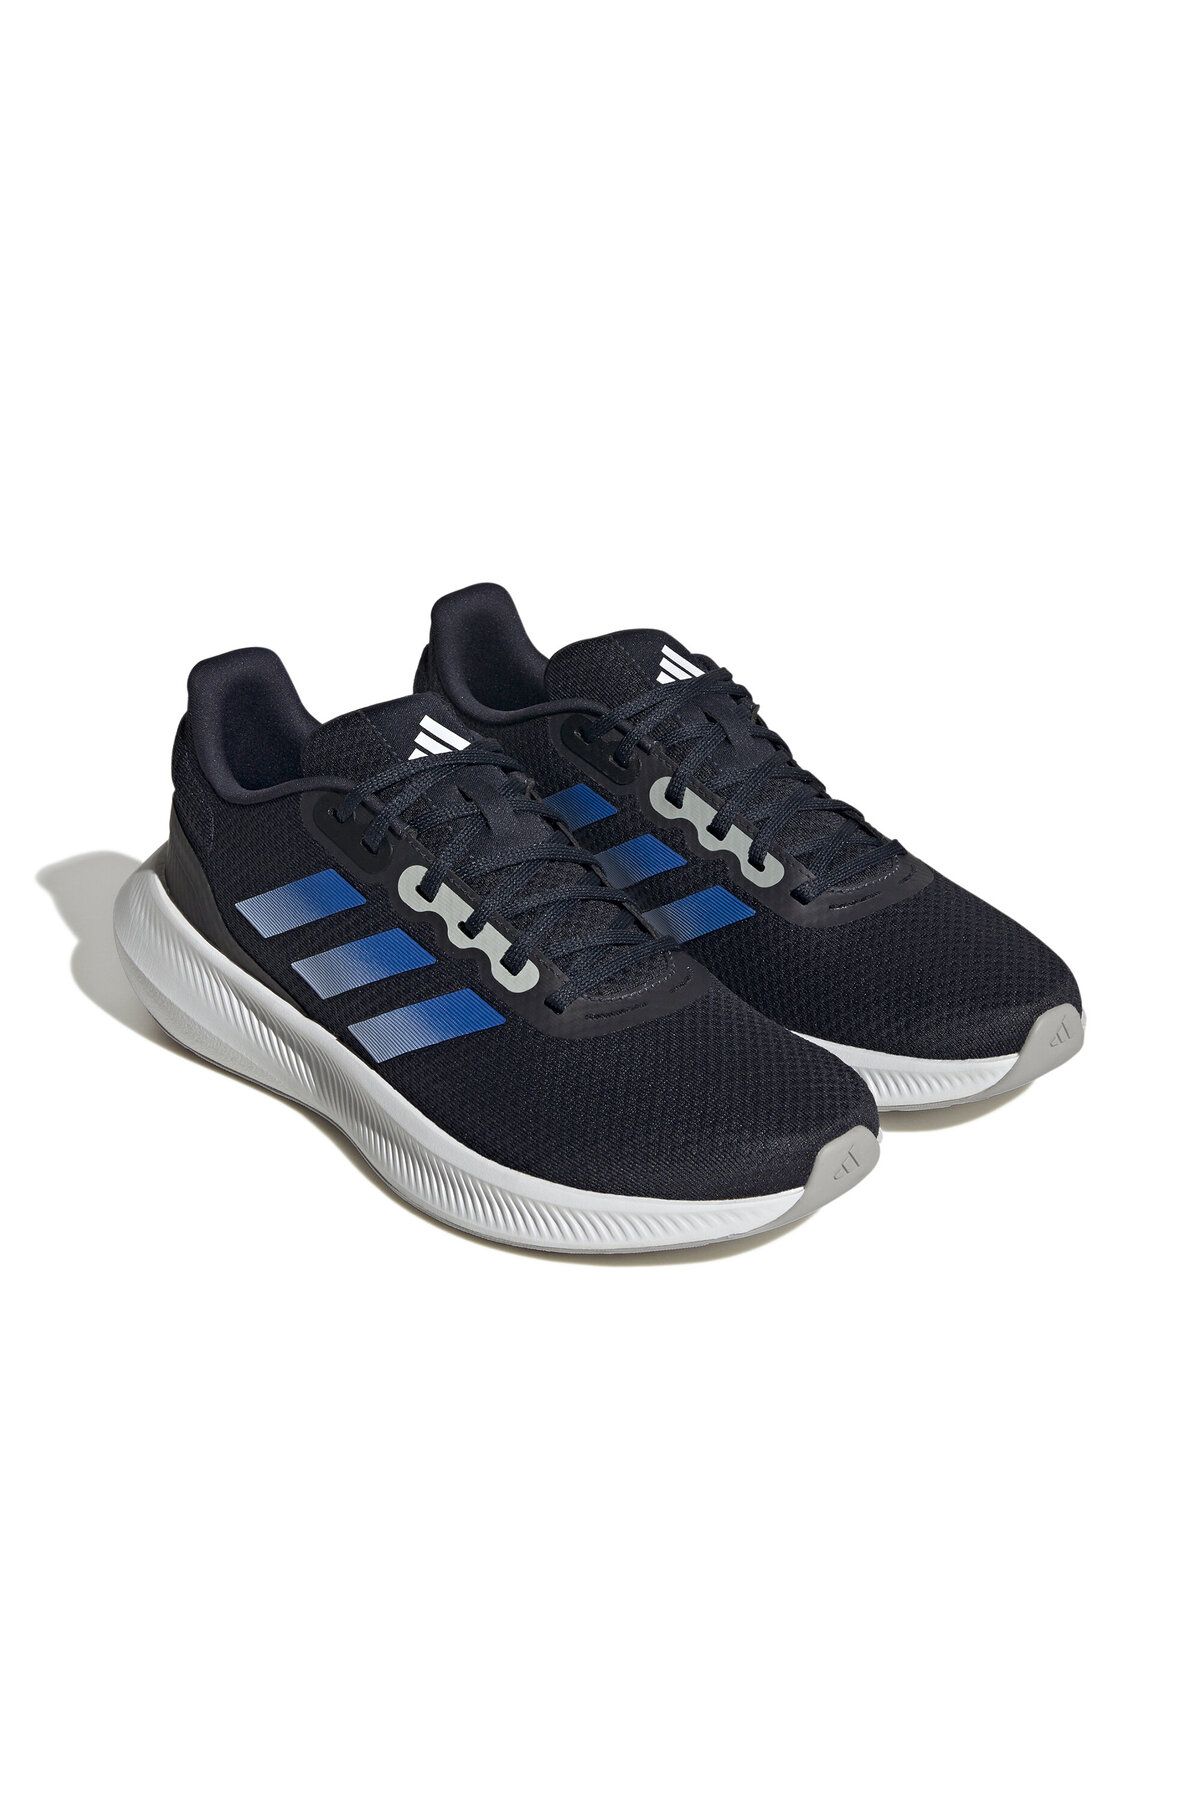 adidas Runfalcon 3.0 Erkek Koşu Ayakkabısı HQ1471 Lacivert